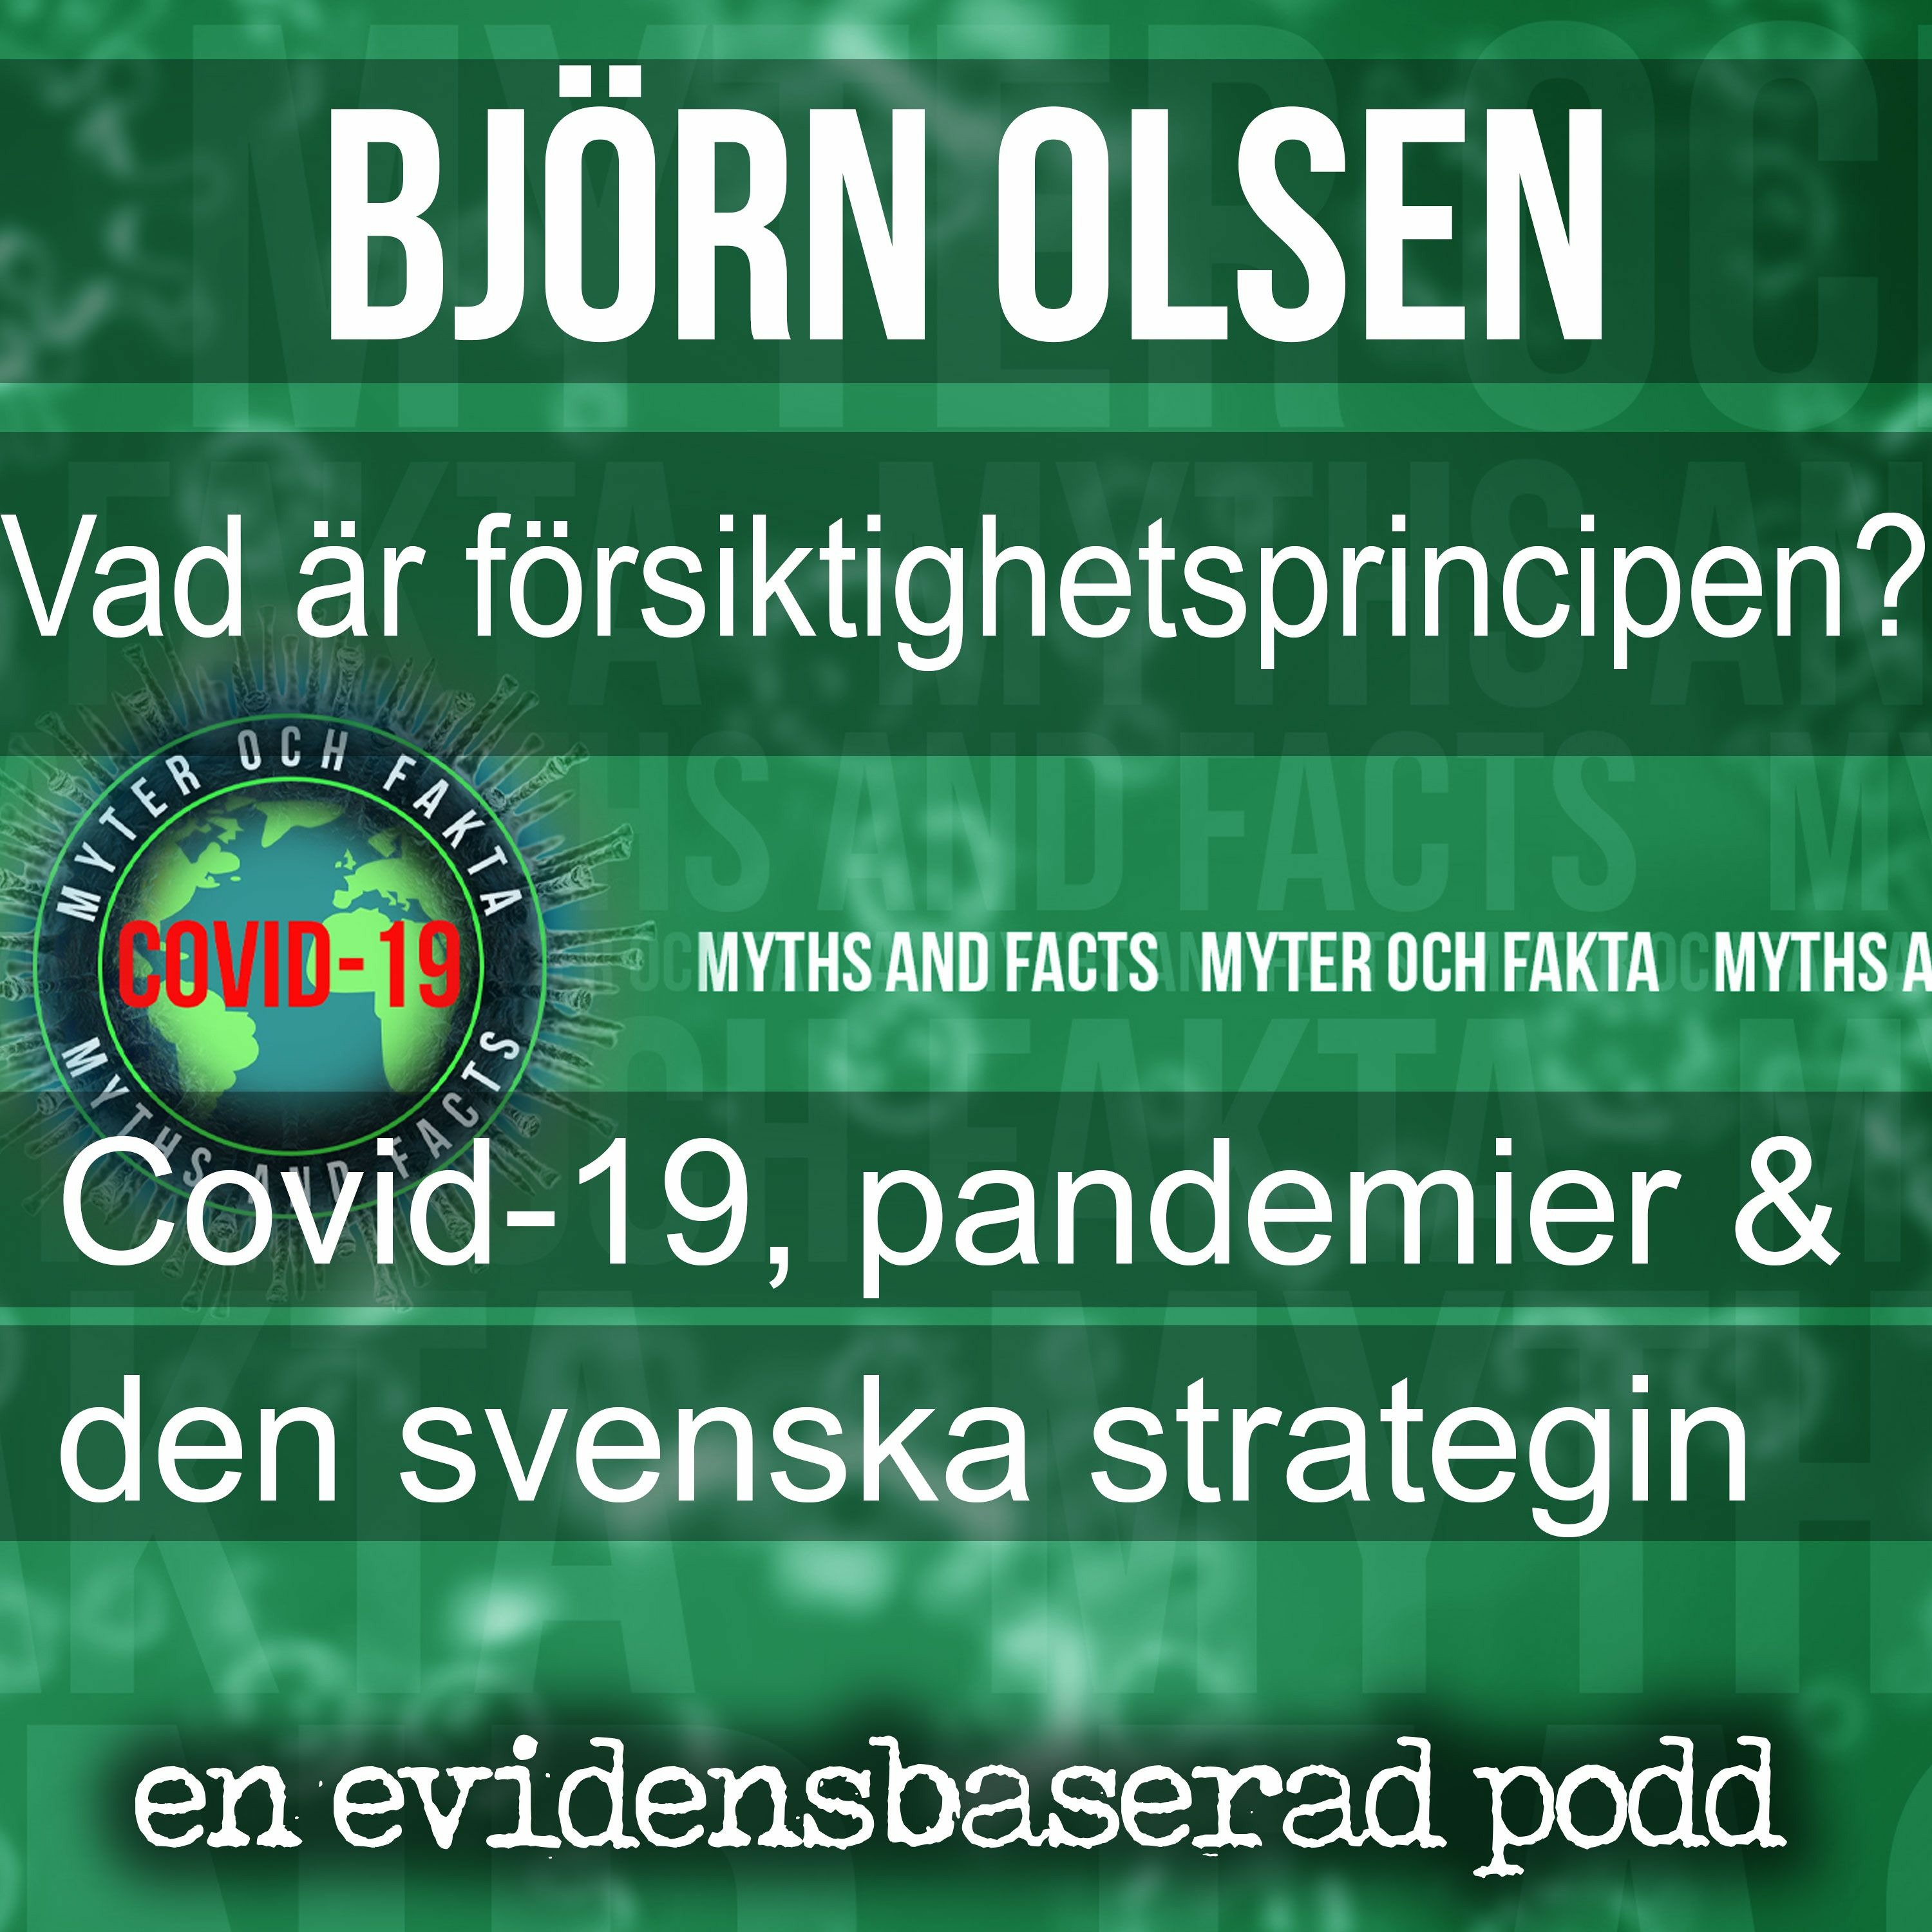 Coronavirus, pandemier och försiktighetsprincipen med Björn Olsen.